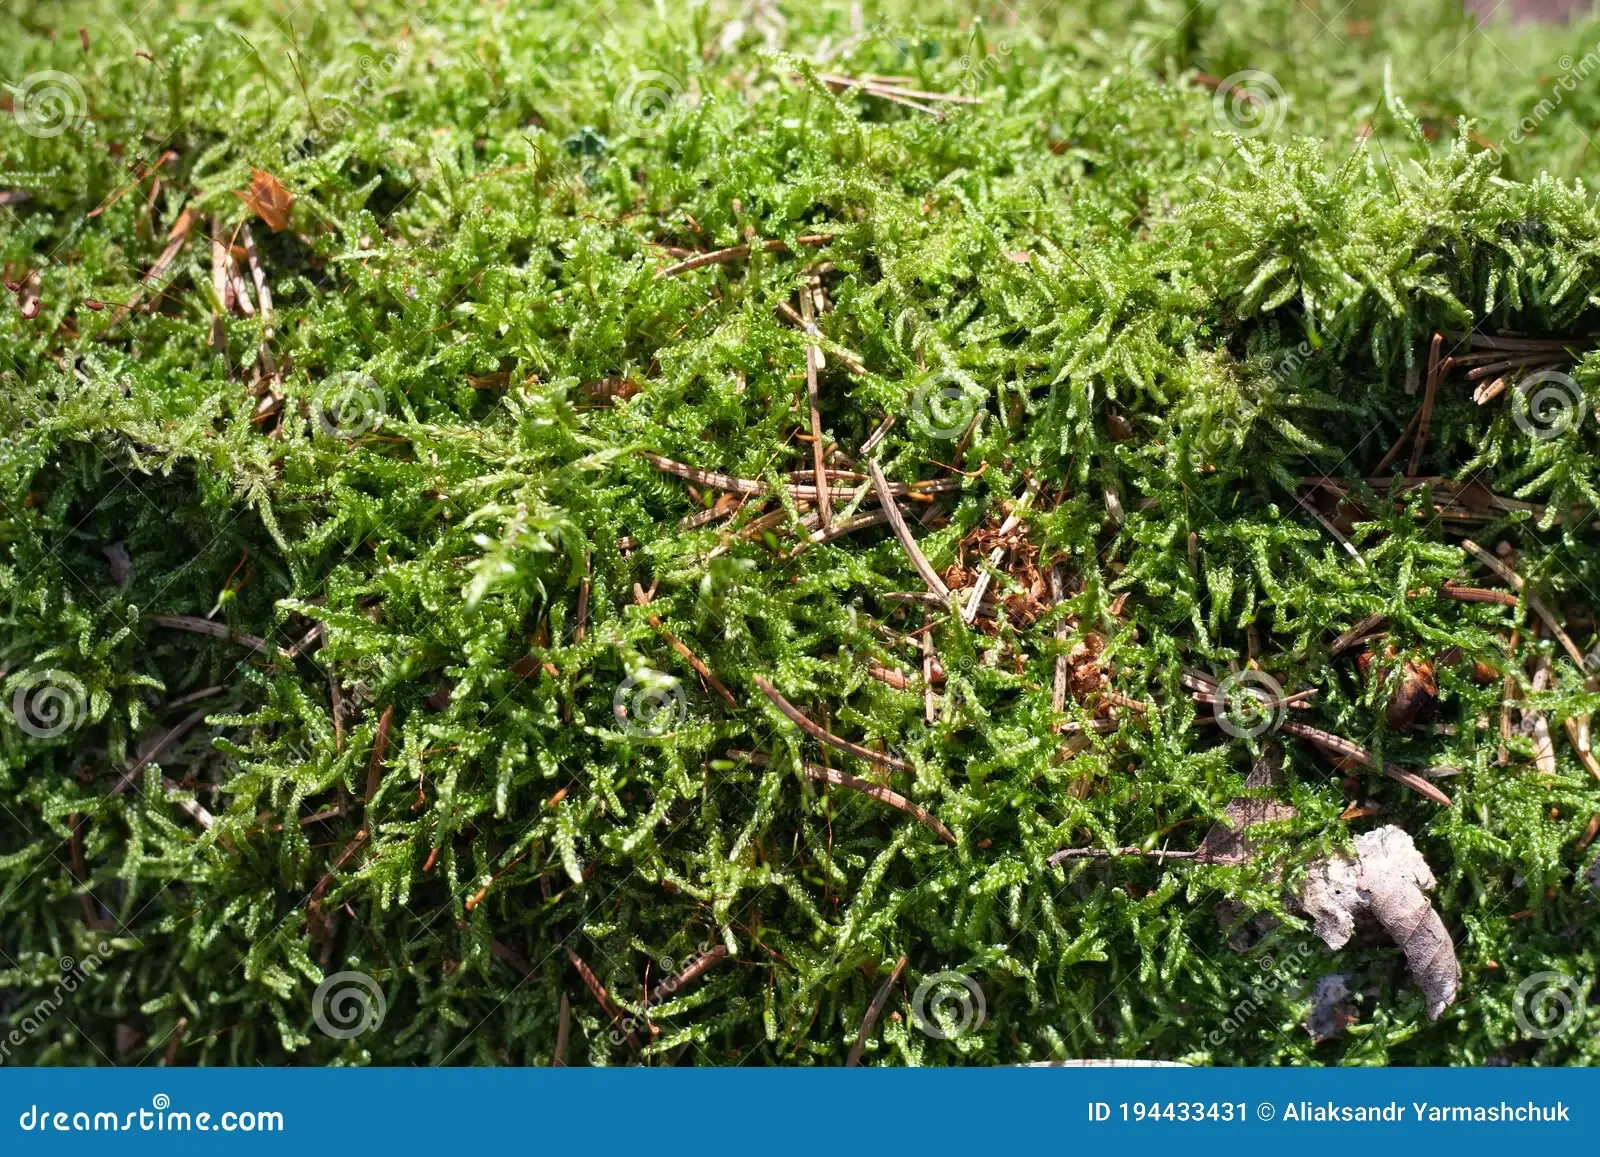 moss-selaginella-kraussiana-kunze-braun-grows-forest-moss-selaginella-kraussiana-kunze-braun-grows-forest-194433431.jpg